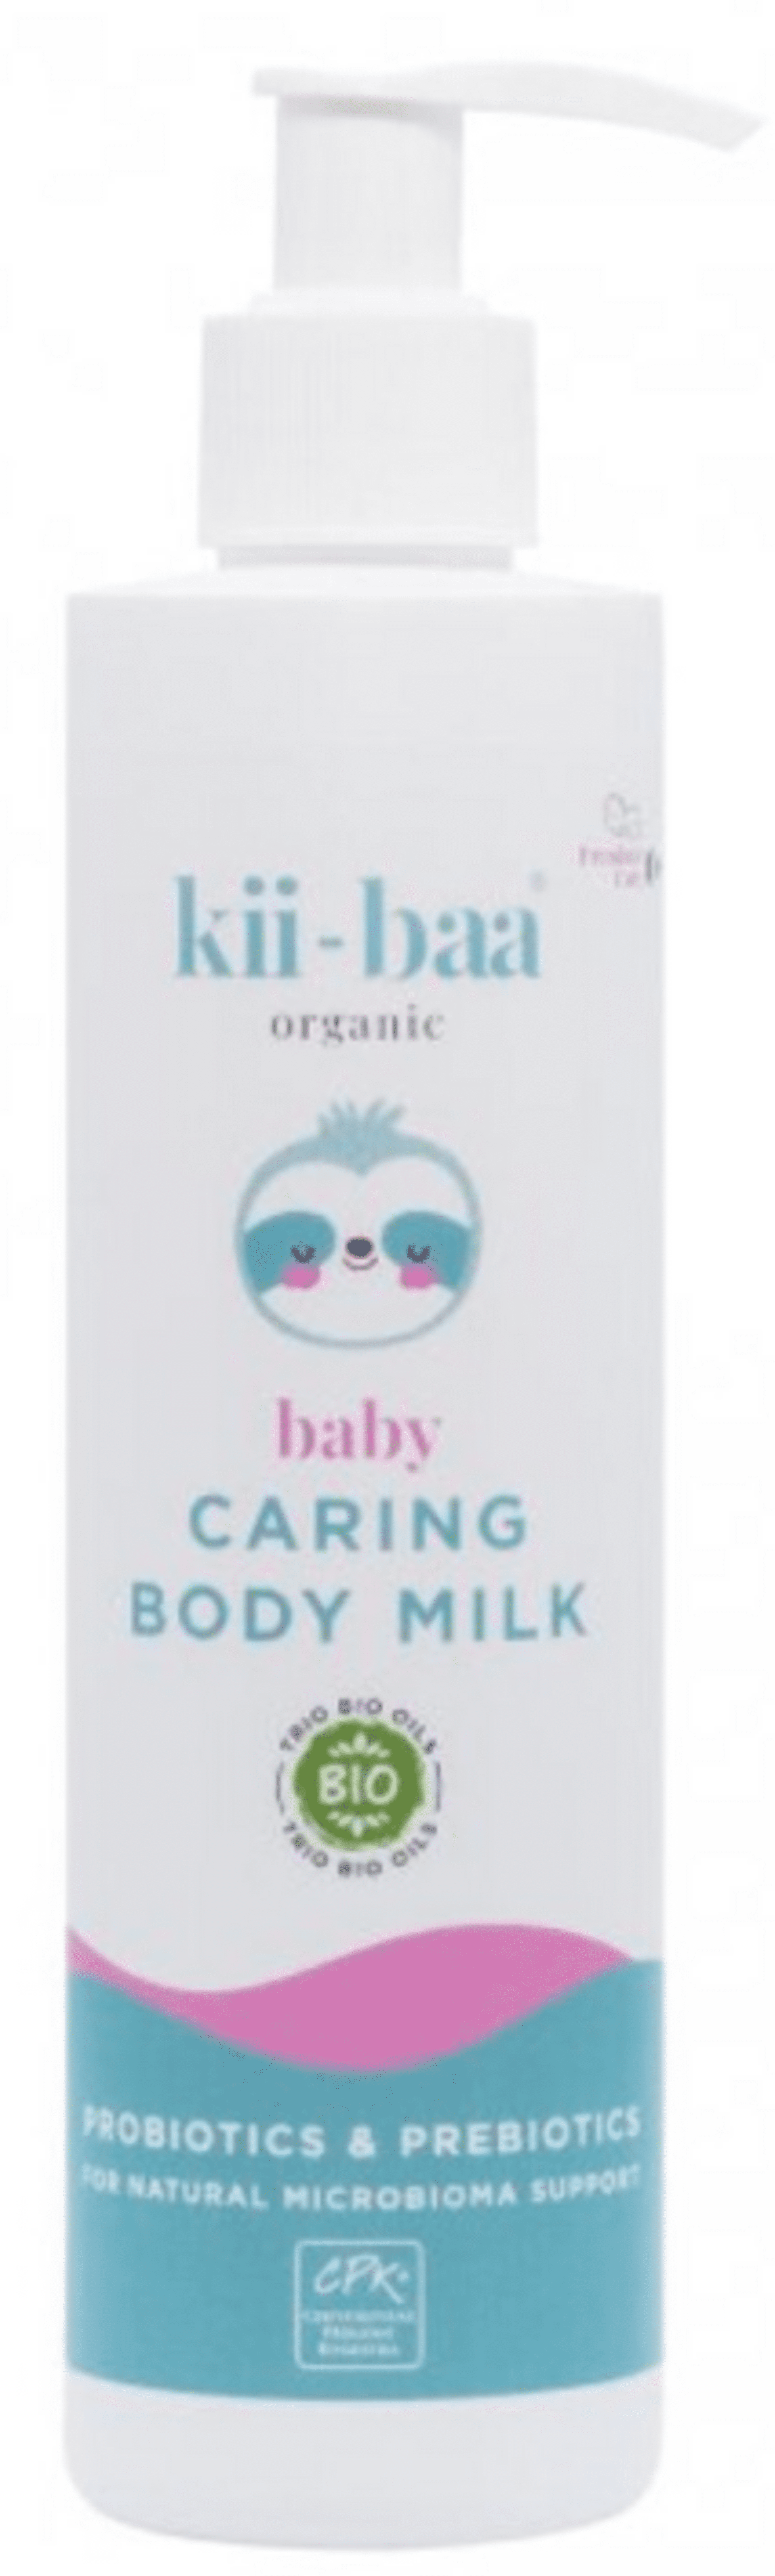 E-shop Kii-baa organic Ošetrujúce telové mlieko 0+ s pre a prebiotikami 250 ml